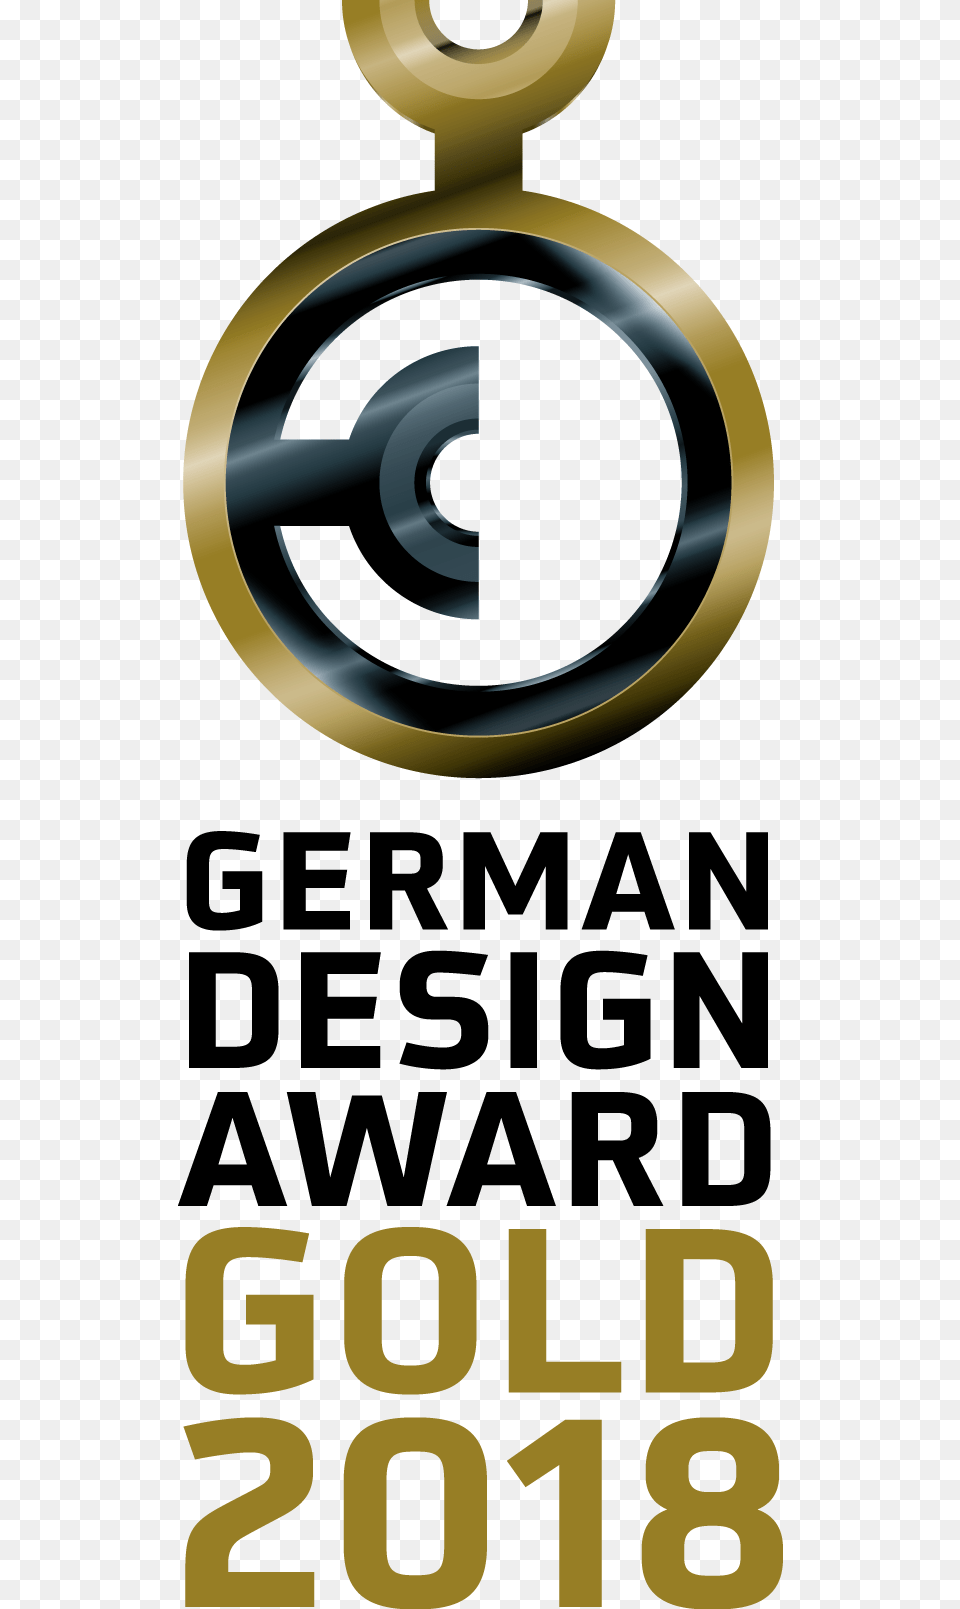 German Design Award Gold 2017, Disk Png Image